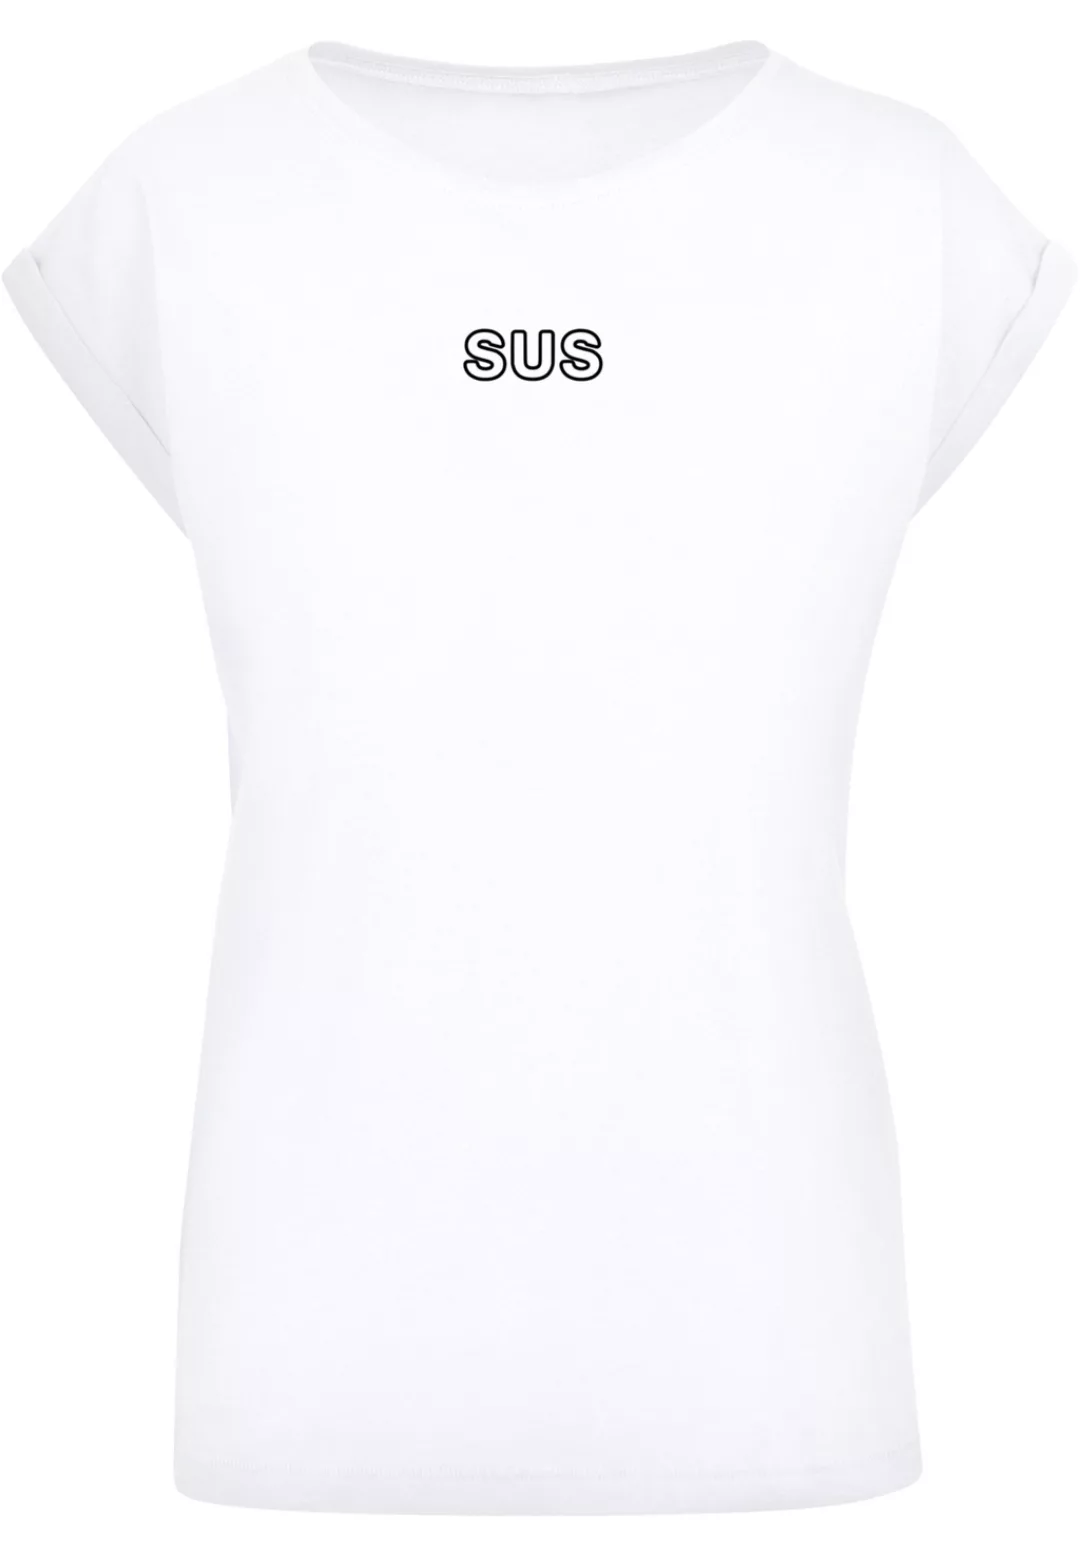 F4NT4STIC T-Shirt "SUS", Jugendwort 2022, slang günstig online kaufen